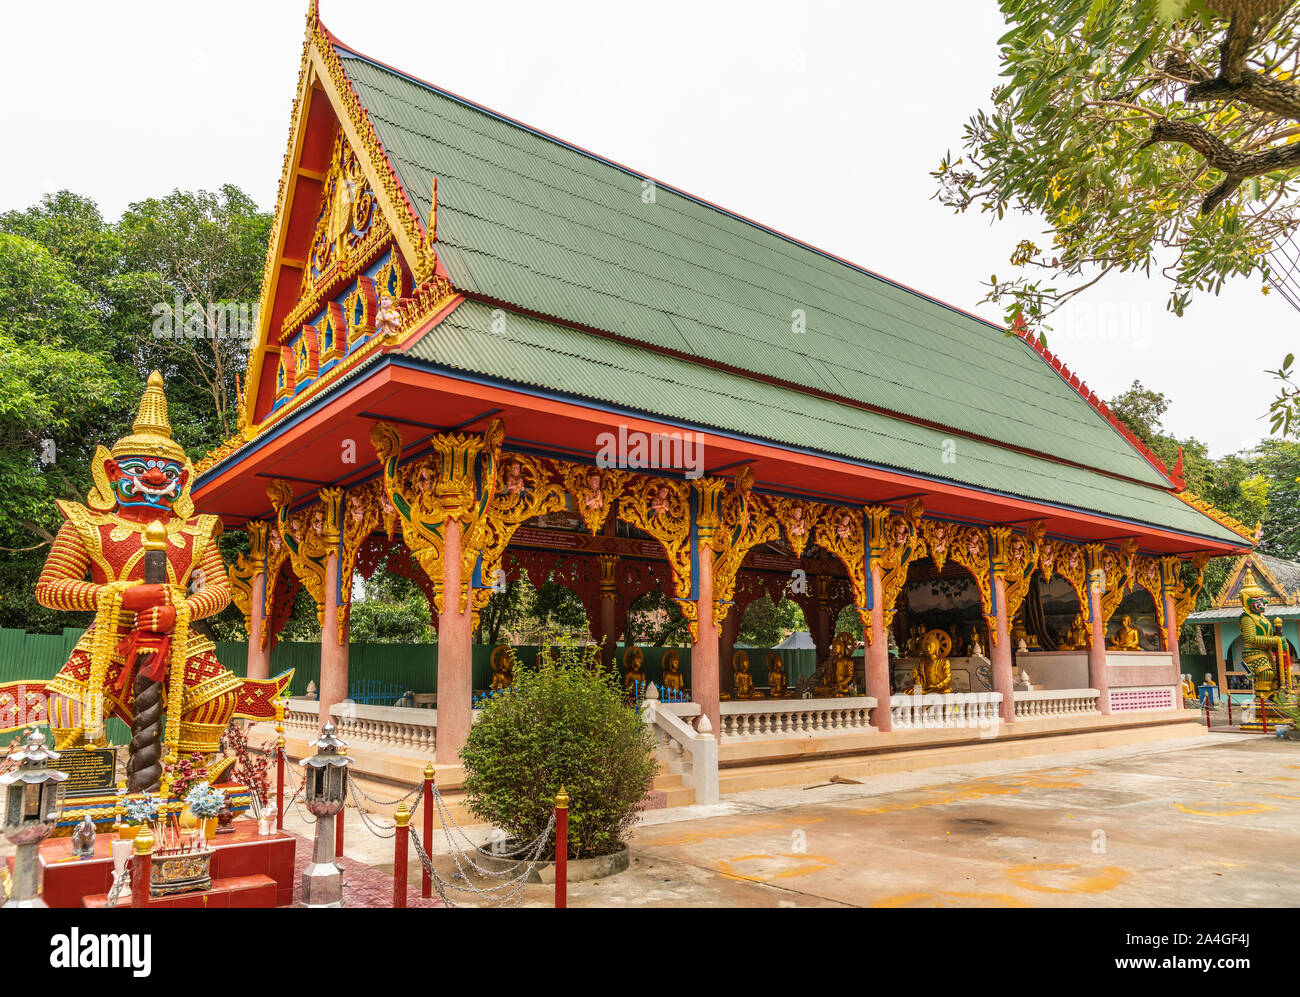 Bang Saen, Tailandia - 16 Marzo 2019: Wang Saensuk monastero buddista. Di scimmia dwarapalaka guardian statue su entrambi i lati della apertura principale preghiera hall Foto Stock